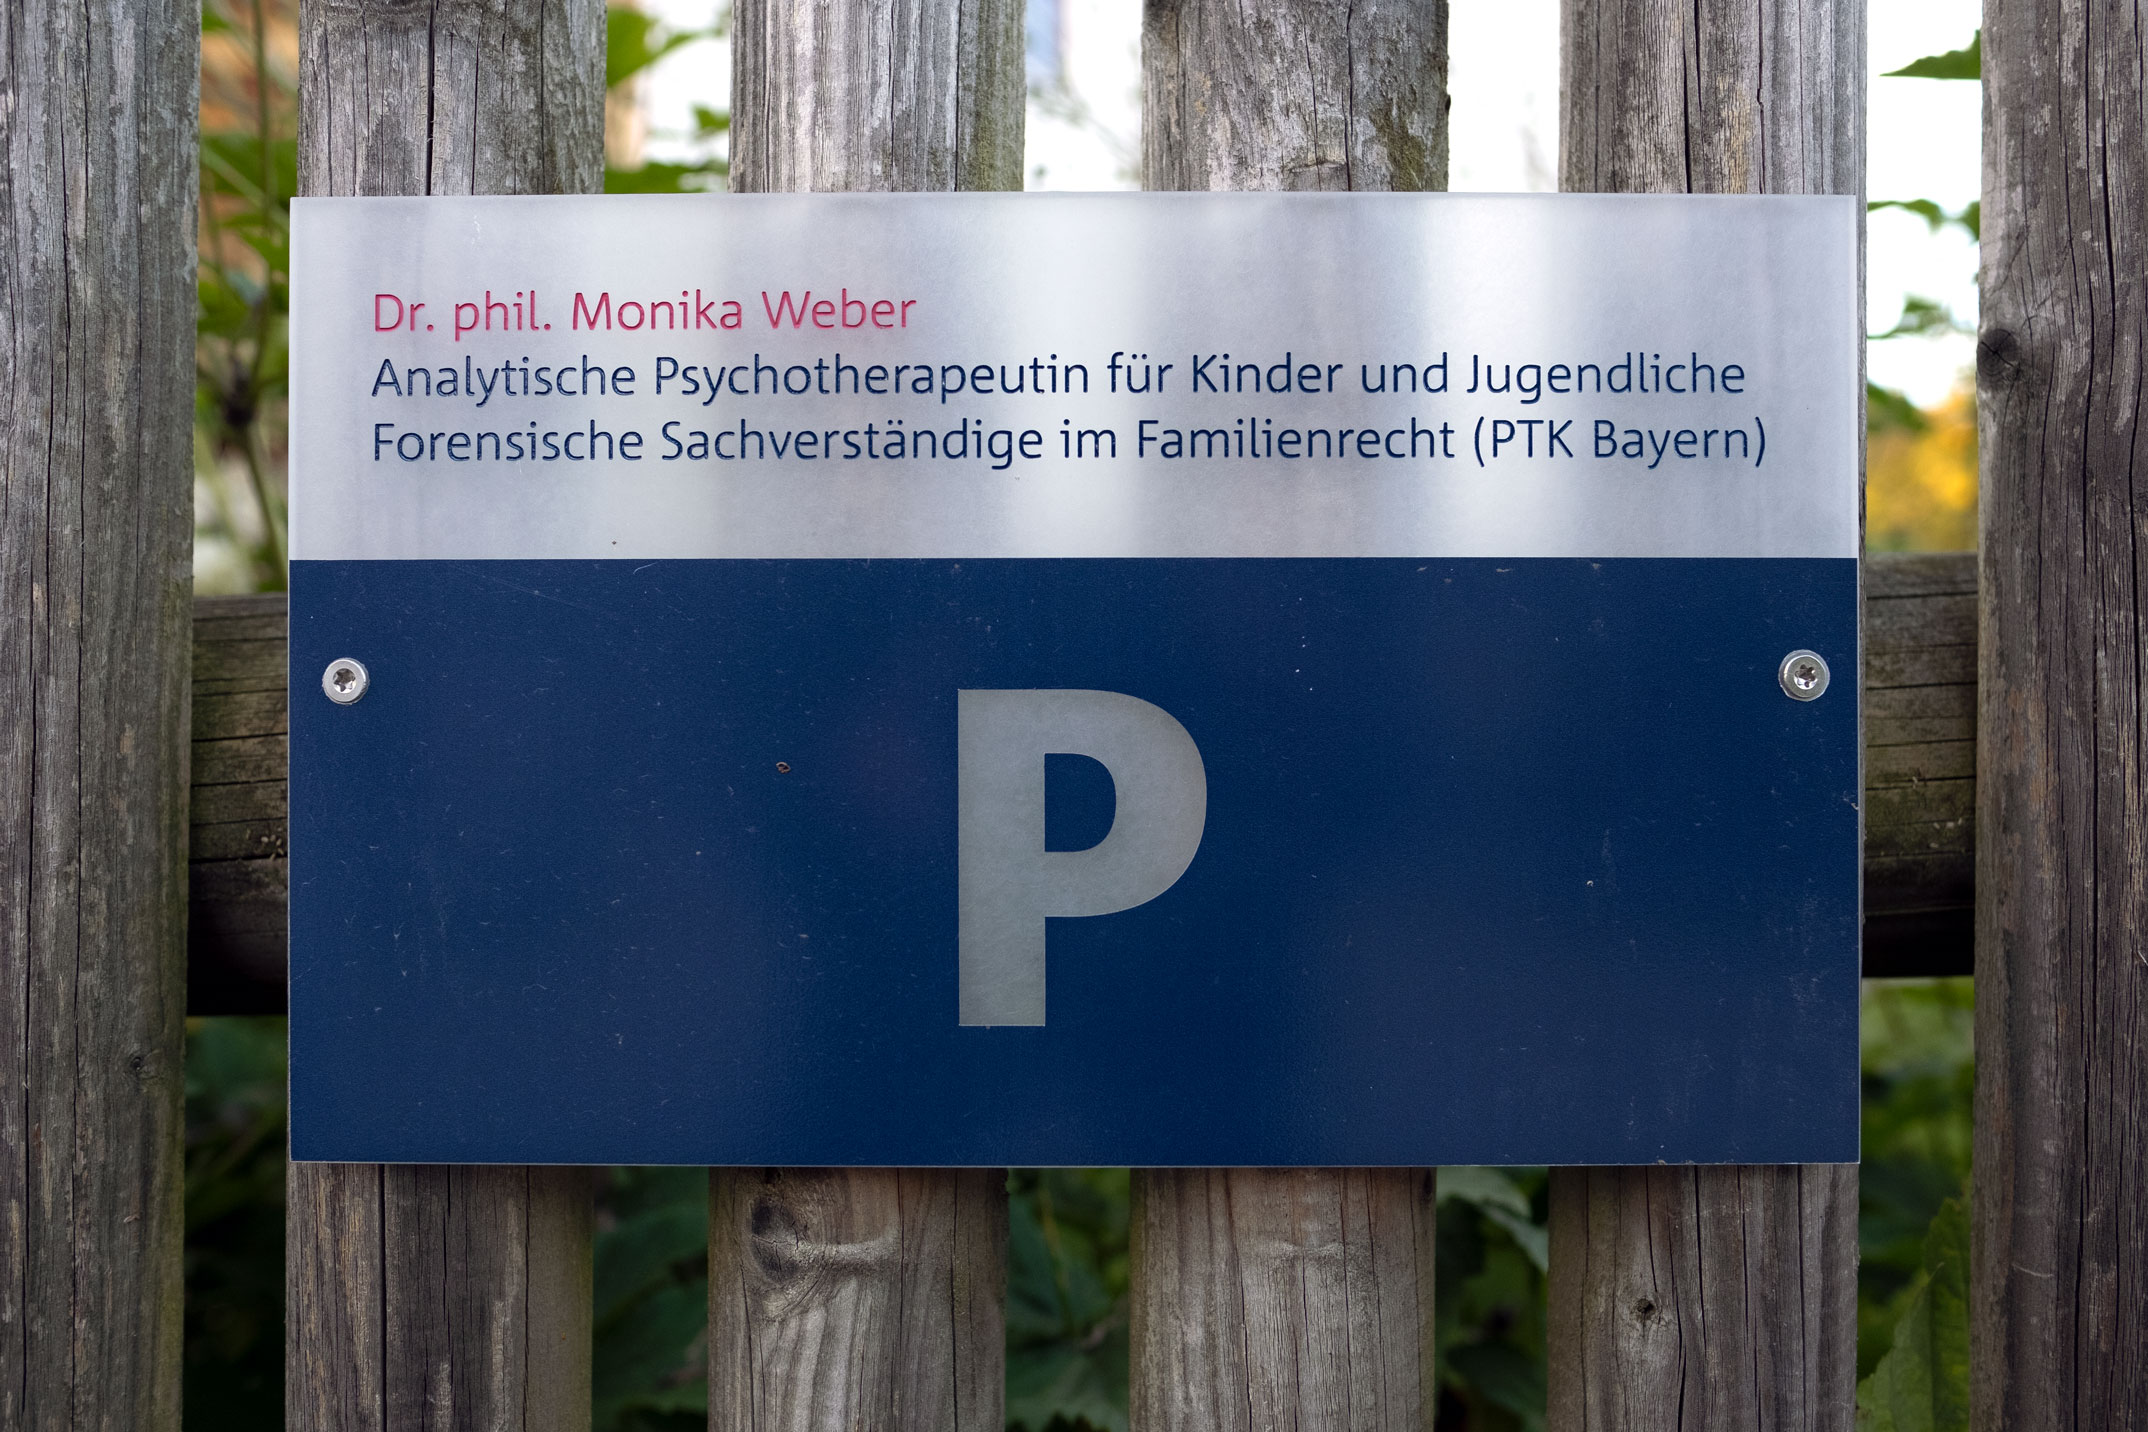 Leitsystem, Schild Parkplatz, Psychotherapie für Kinder und Jugendlieche, Dr. phil. Monika Weber, Beuerberg